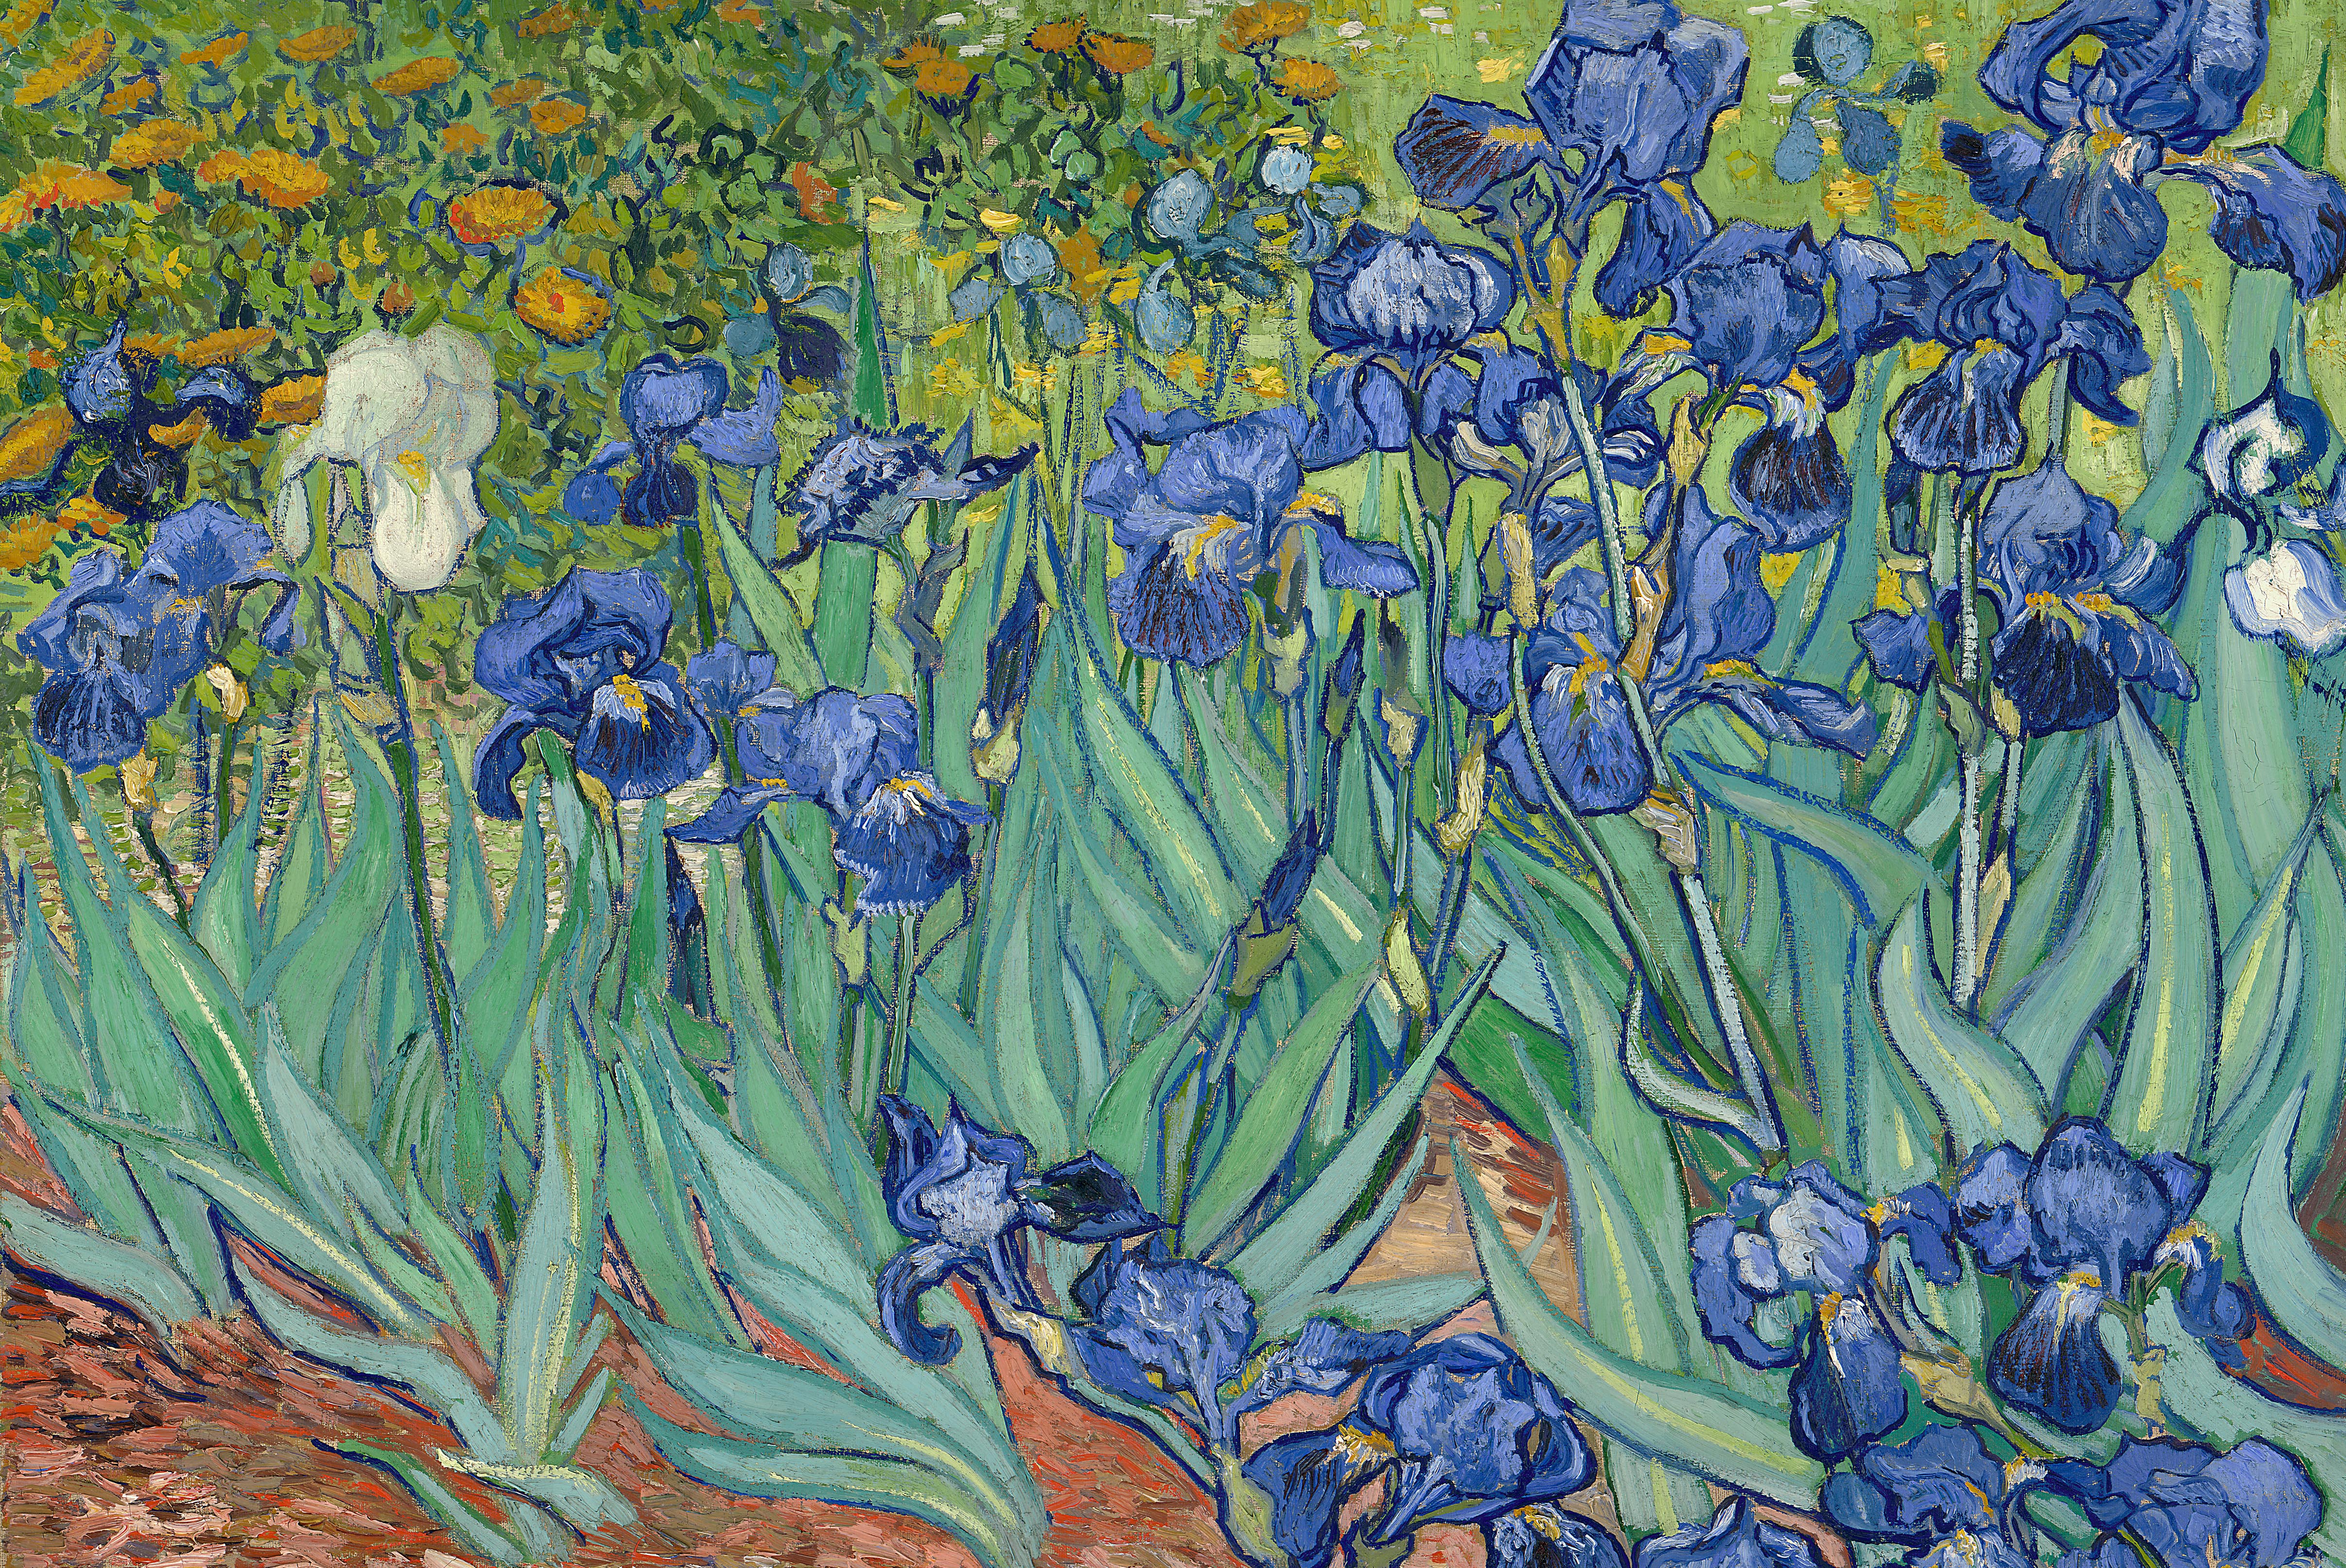 Irises in Garden by Van Gogh